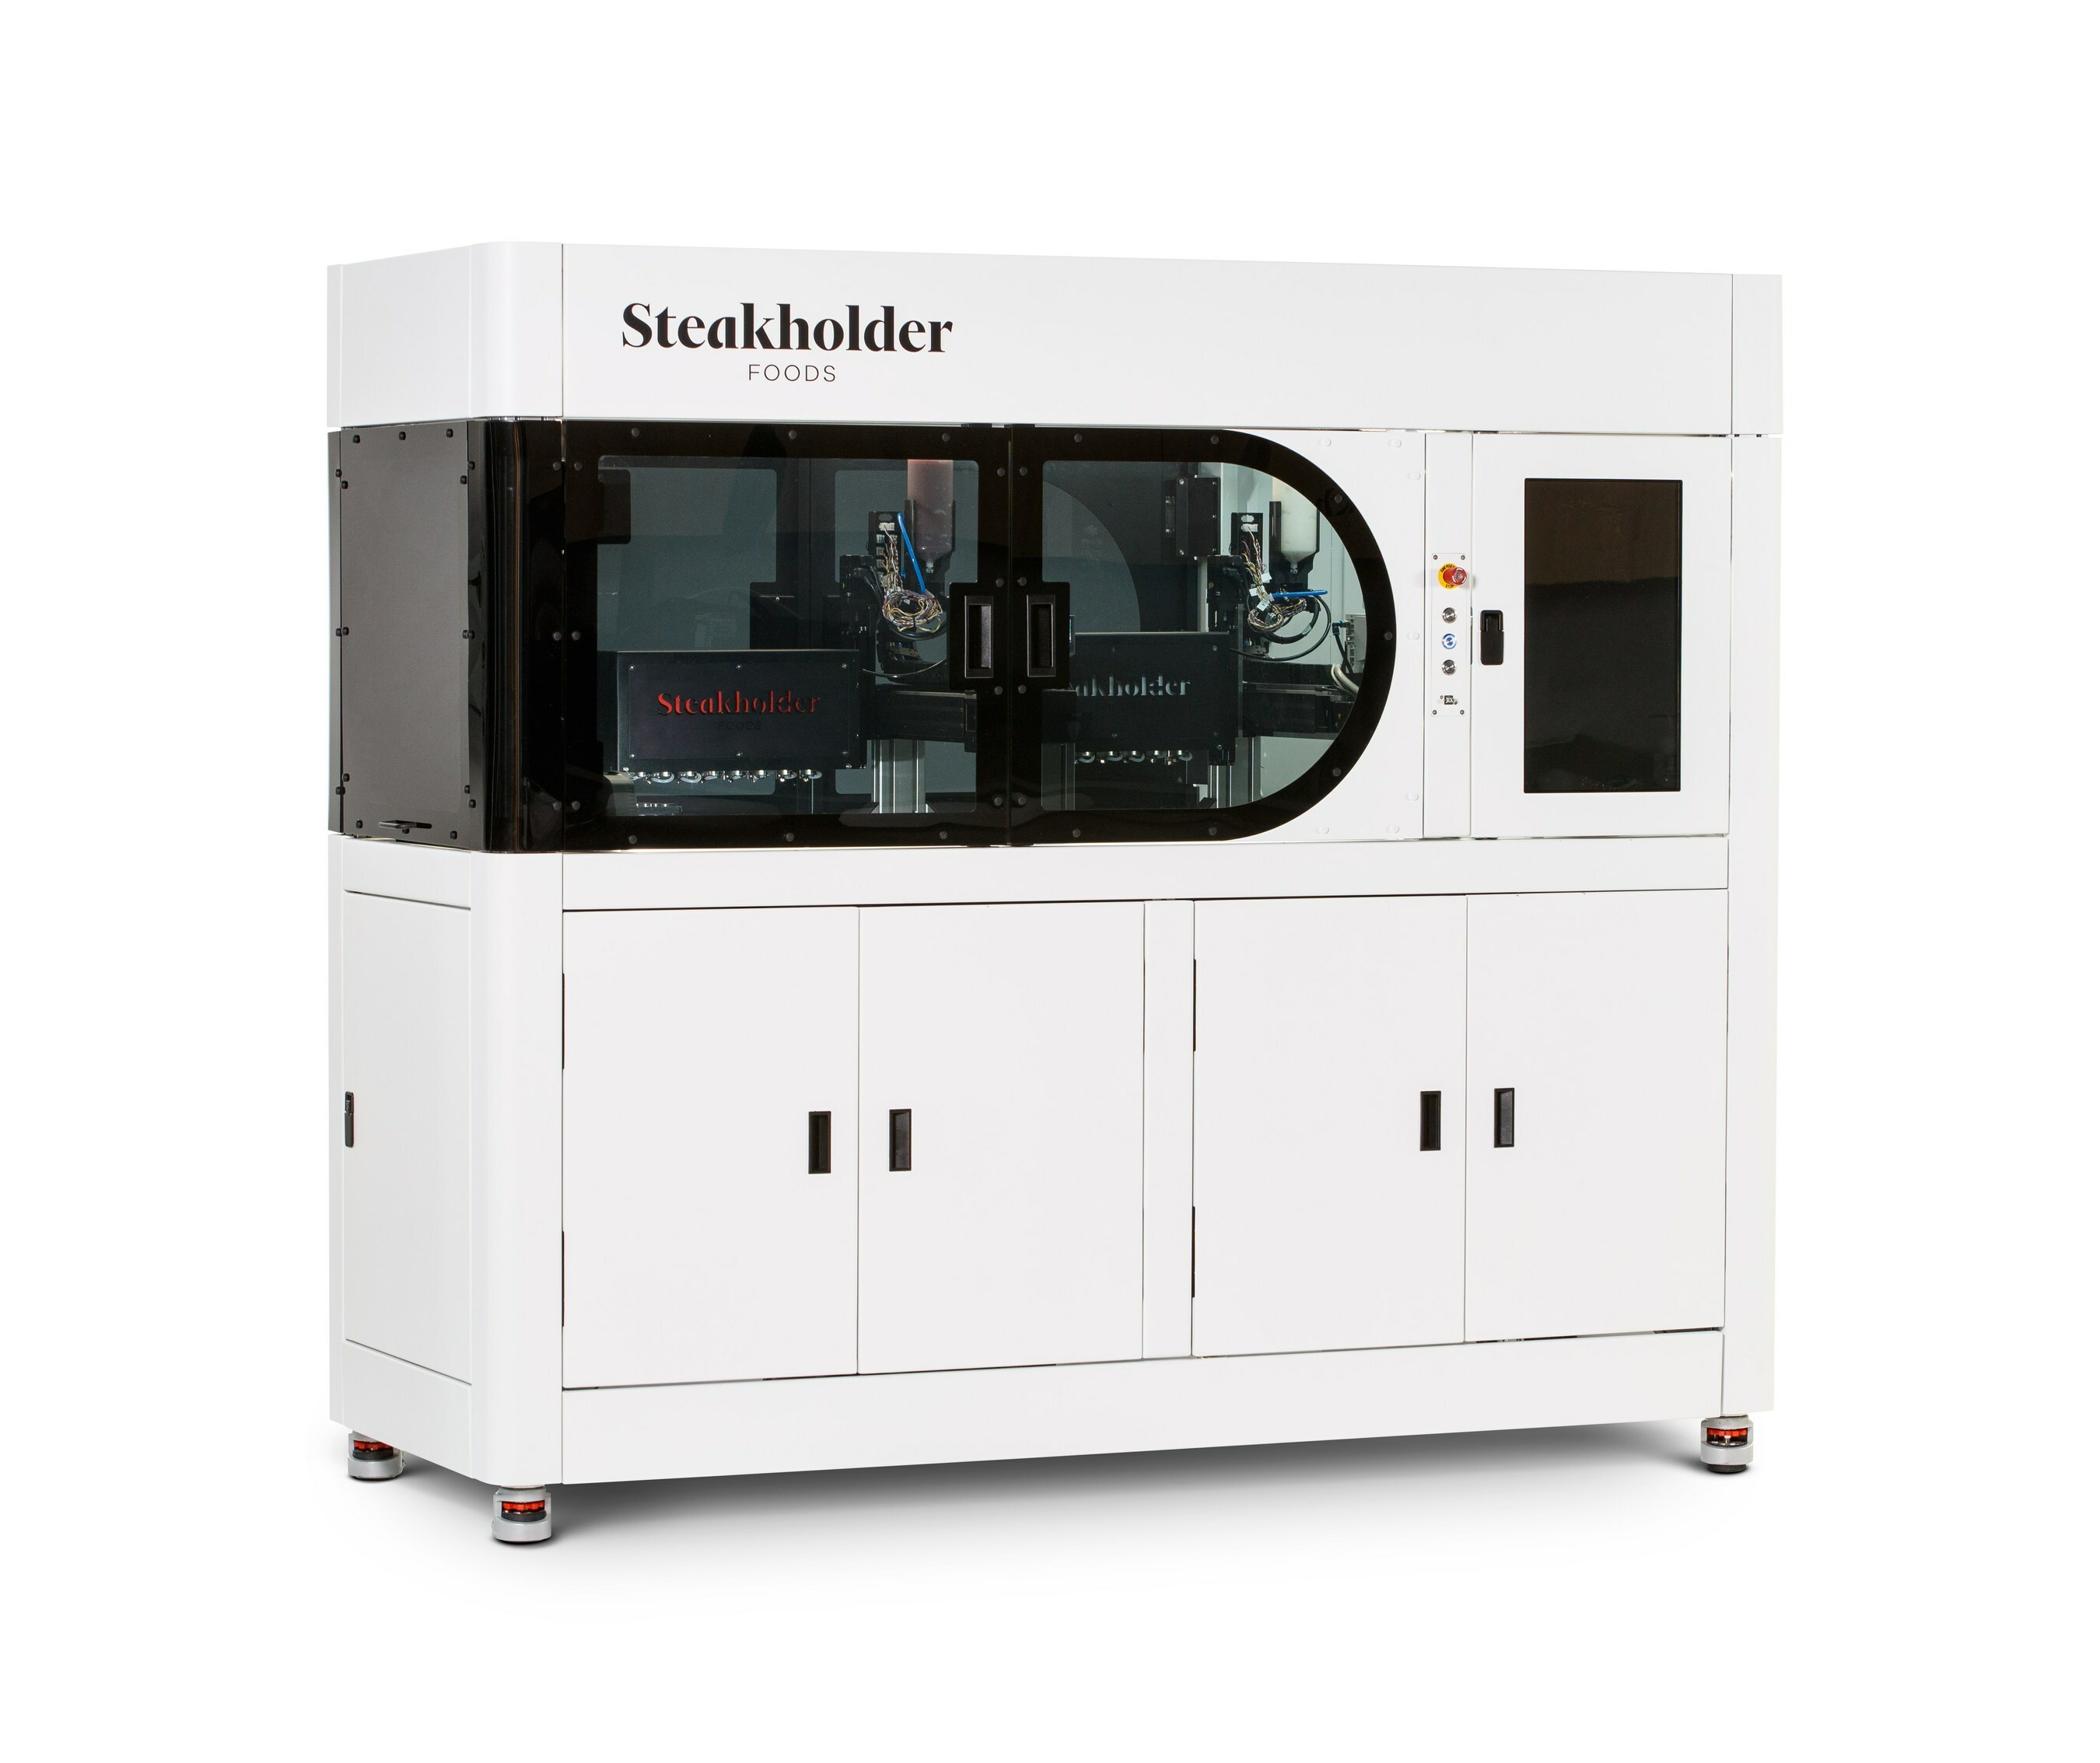 Steakholder Foods’ Dropjet 3D-printer